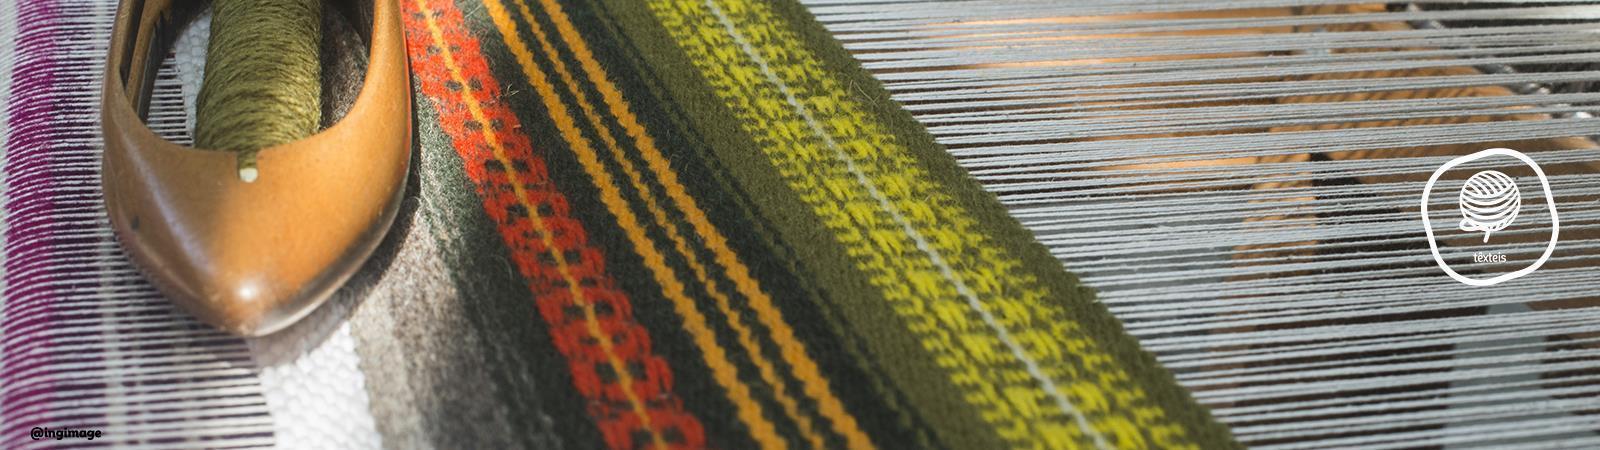 Artes do têxtil - Projetos de Tecelagem